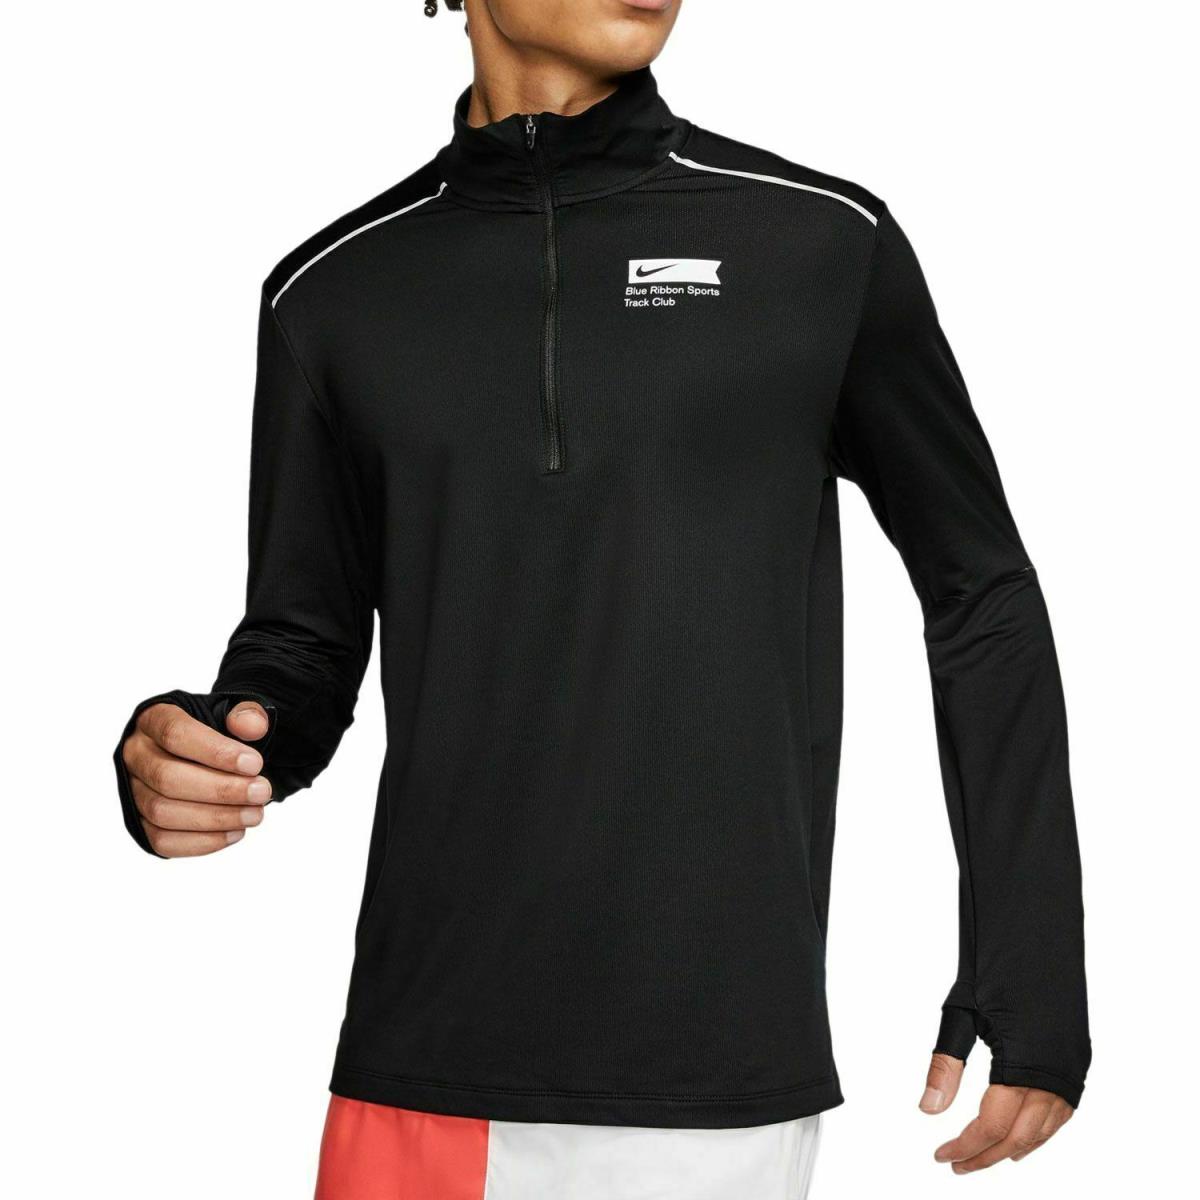 Nike Blue Ribbon Sports Track Club 1/2 Zip Running Top Black Shirt Size 2XL